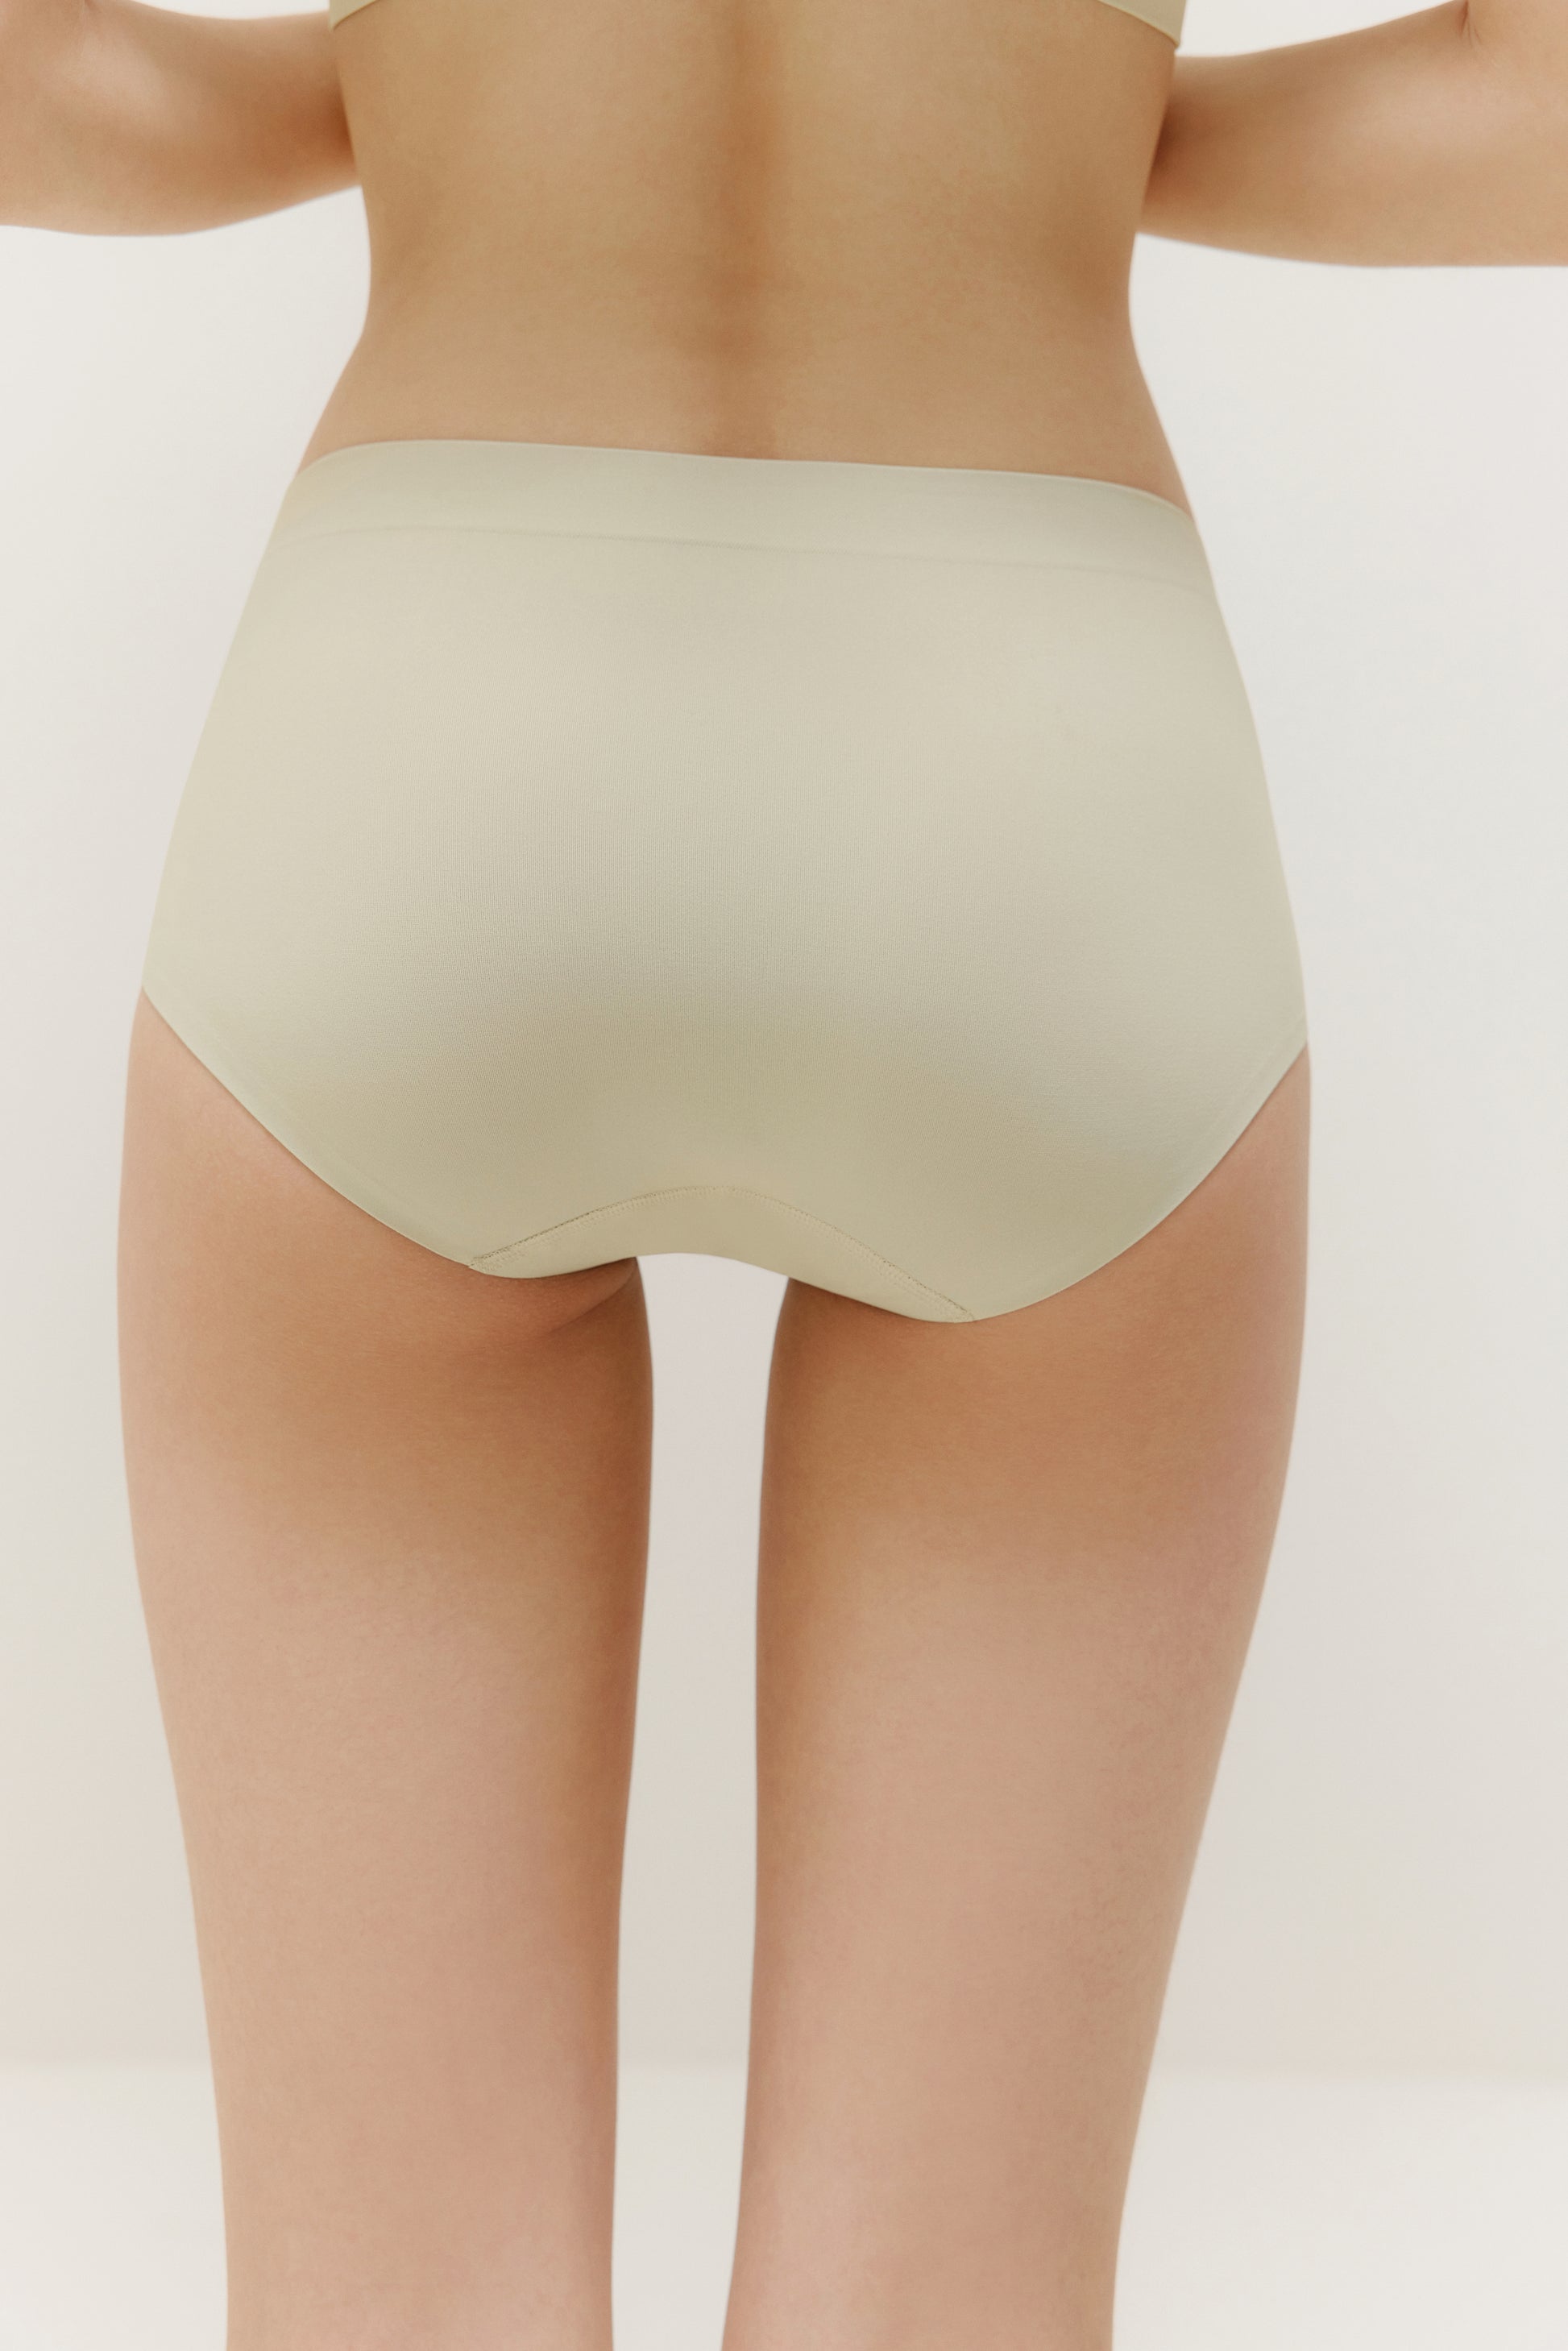 Women Seamless Ice Silk Ultra Soft Mid-Waist Modal Underwear Panties No  Show Briefs 